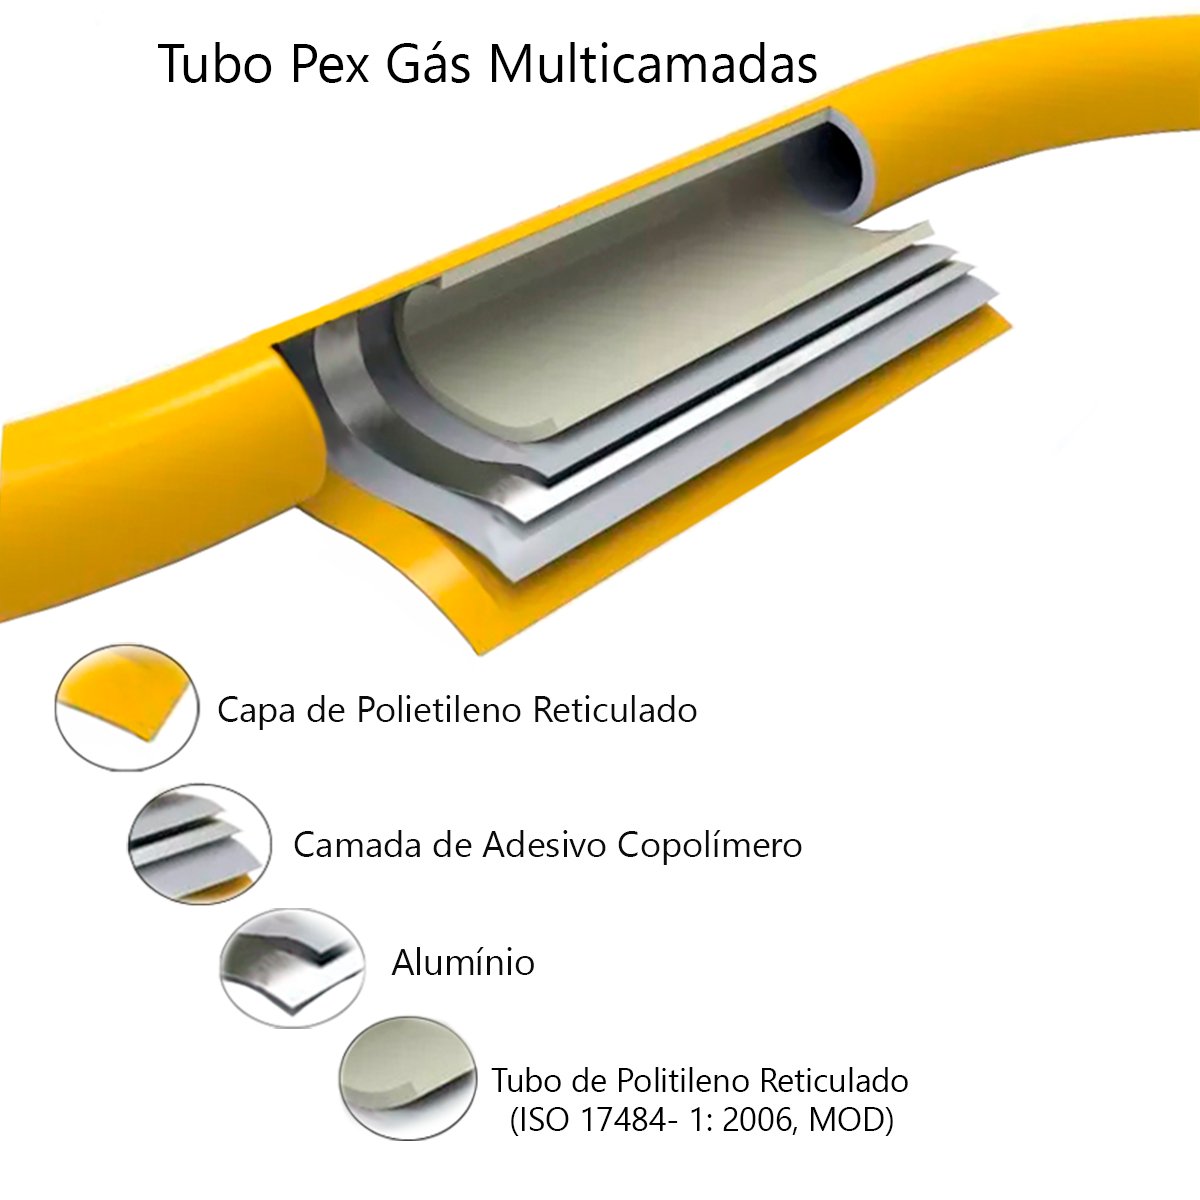 Tubo Pex Gás 16mm Multicamadas Alumínio (30 Metros) Tudogás - 2